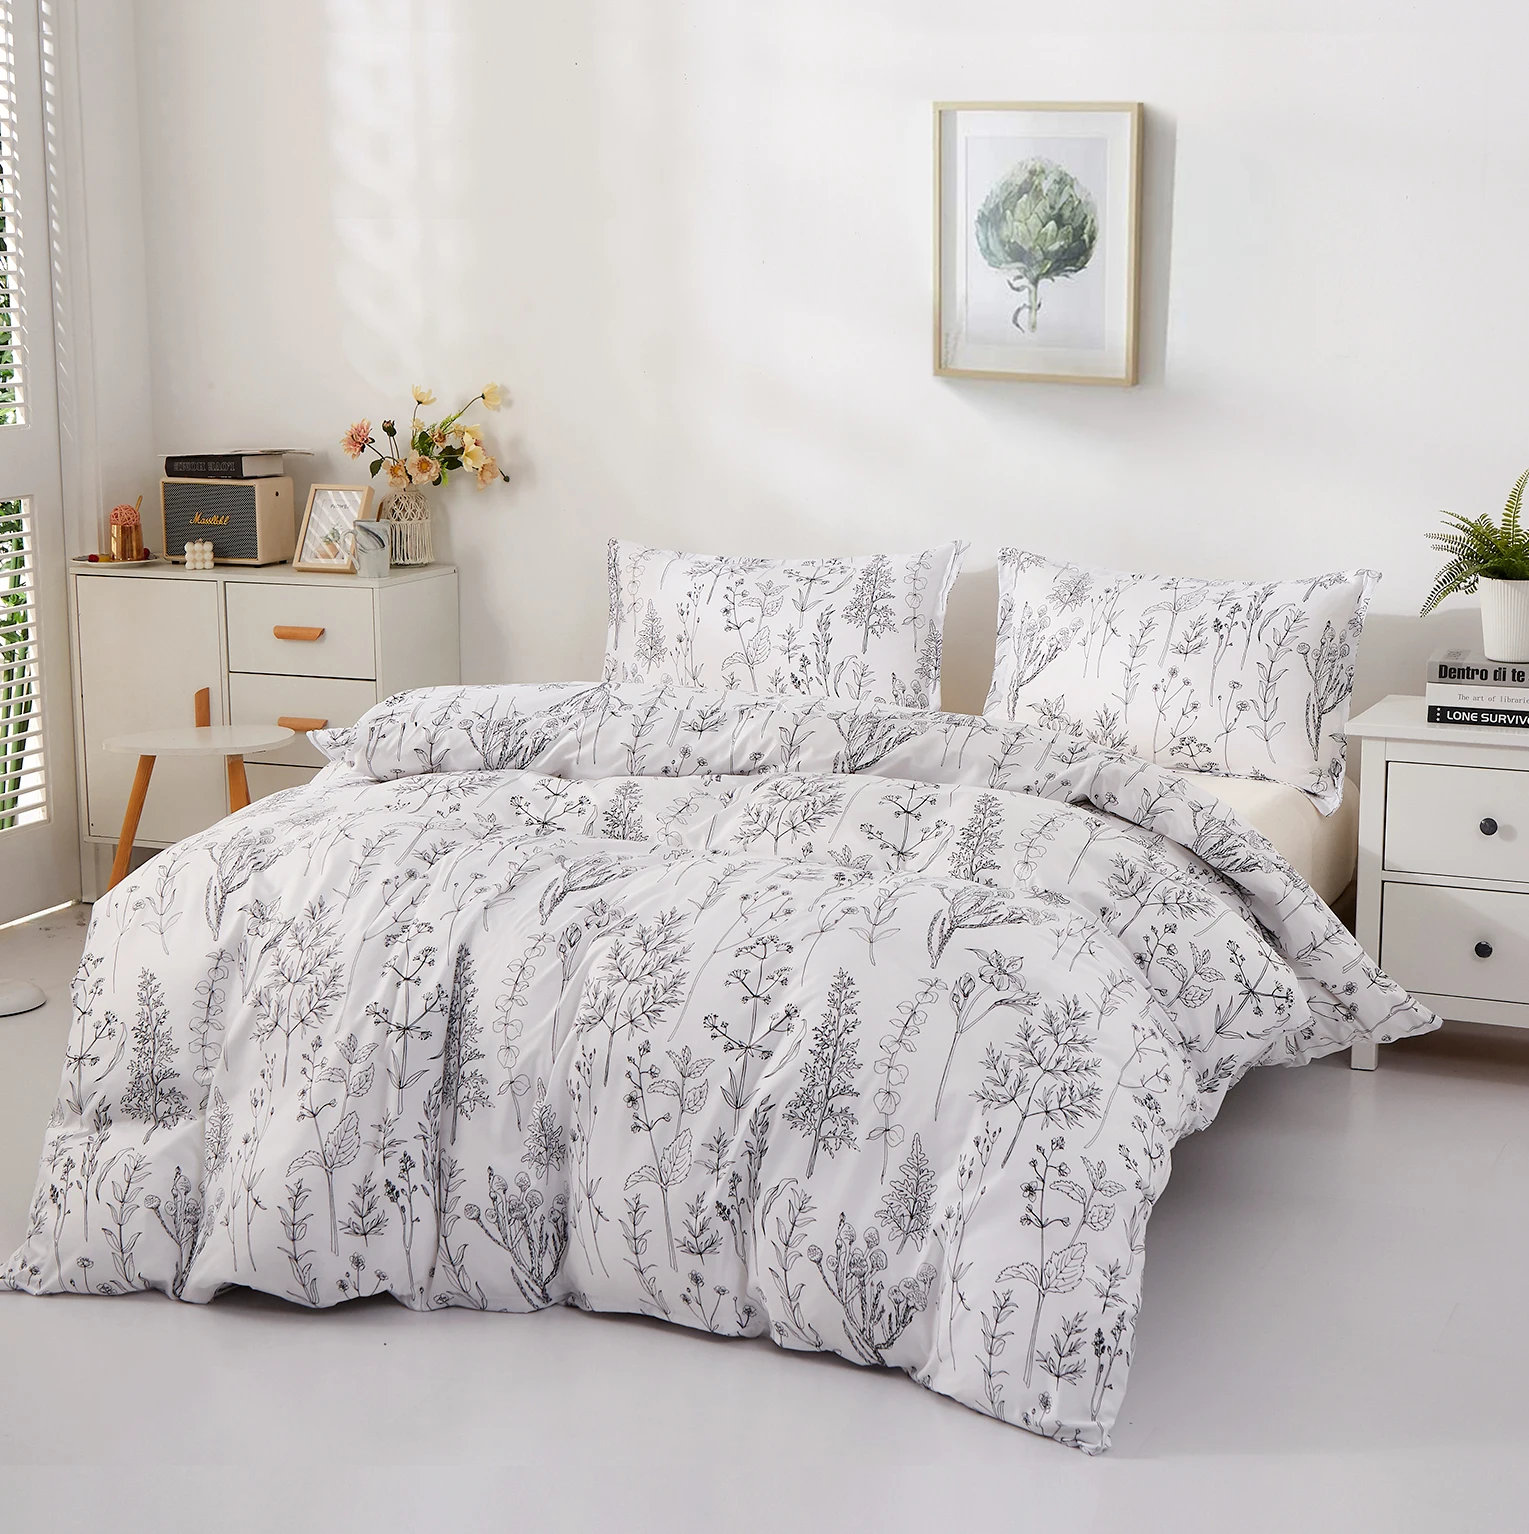 Parure de lit à Branches blanches et noires, ensemble de literie pour lit Double, housse de couette en microfibre, taie d'oreiller, 3 pièces